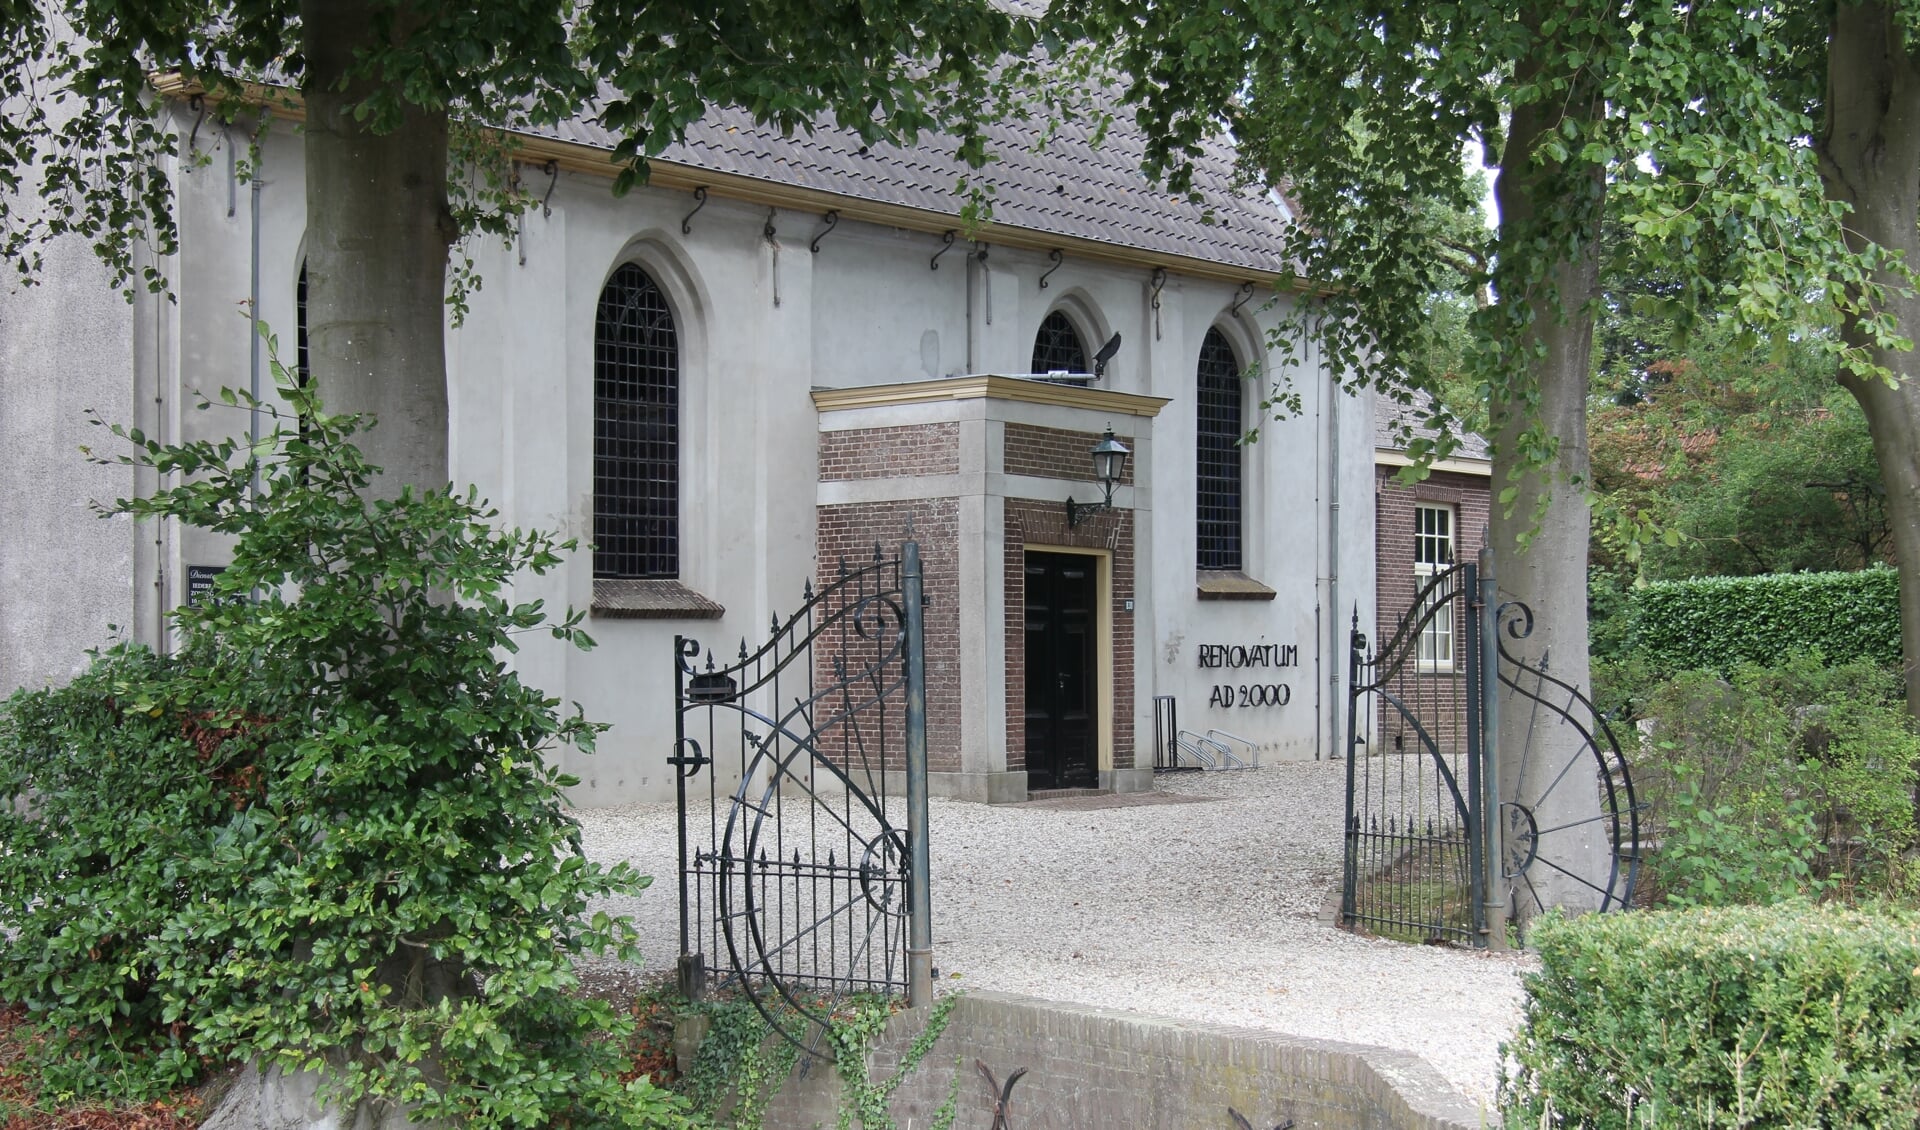 De kerk in Overlangbroek